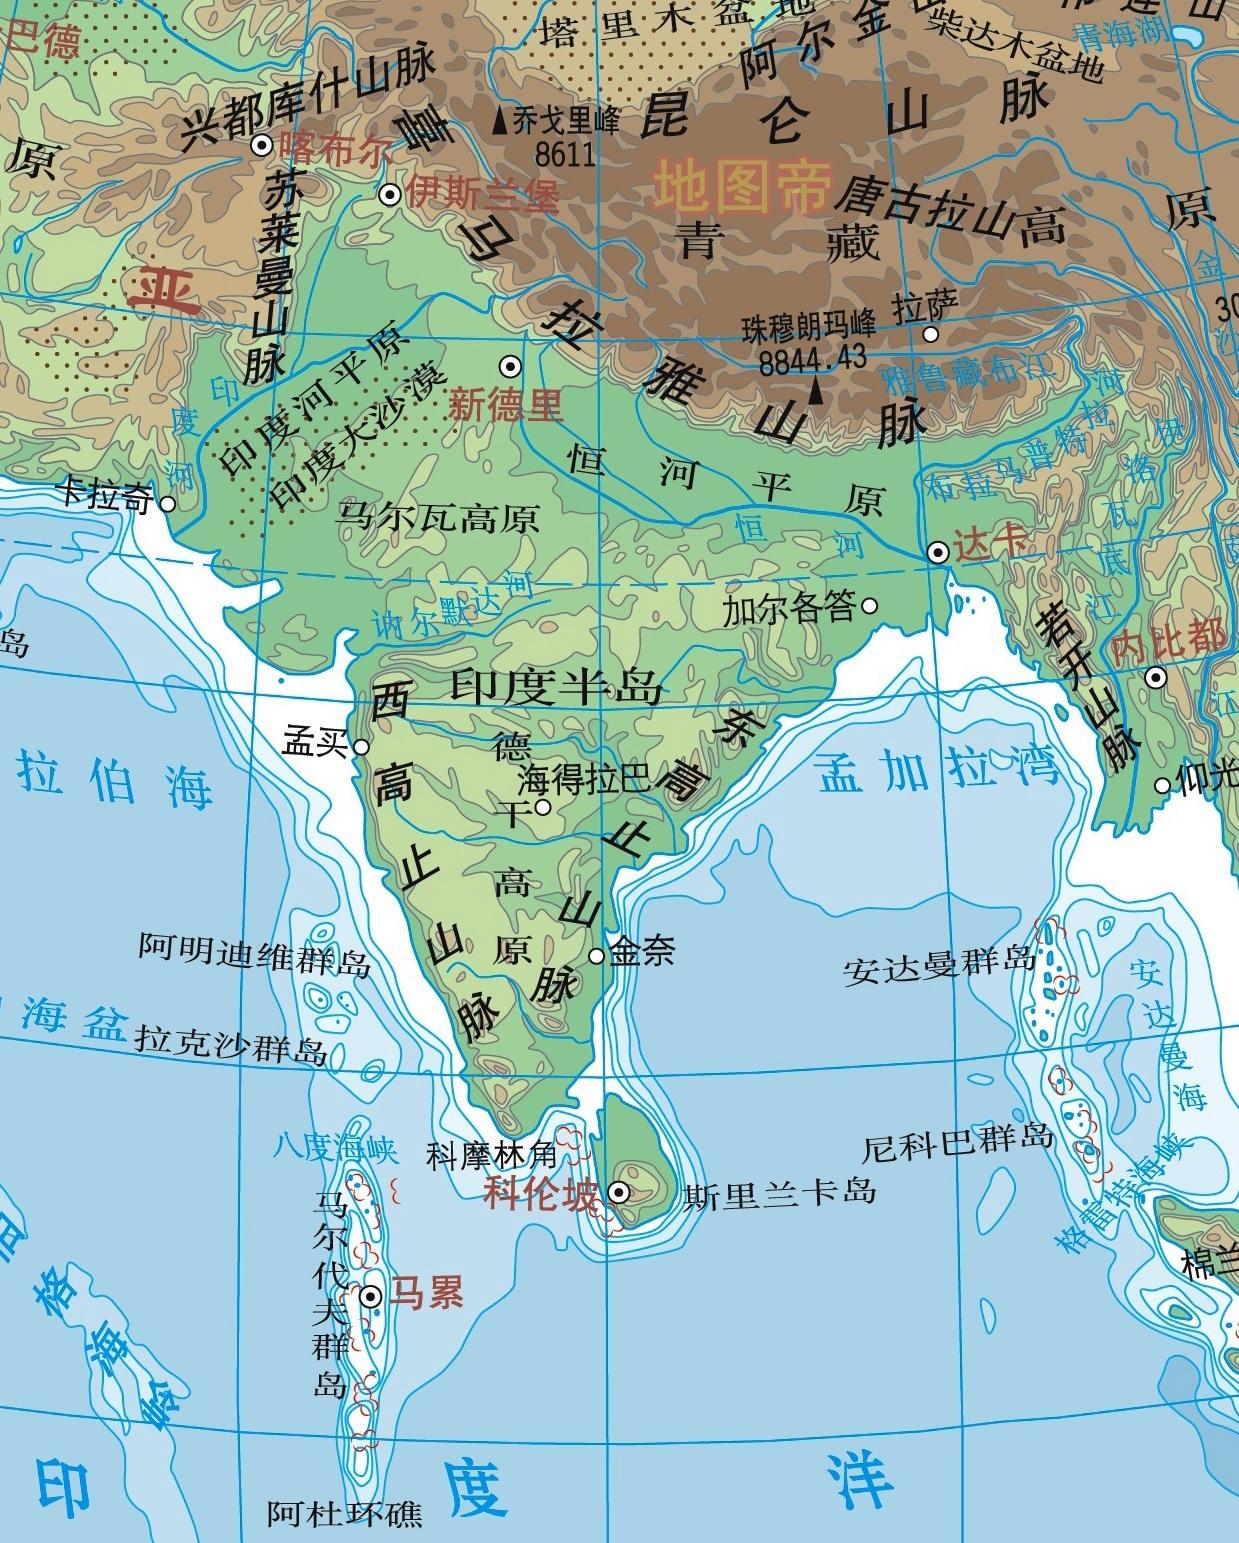 亚洲地形图高清可放大图片